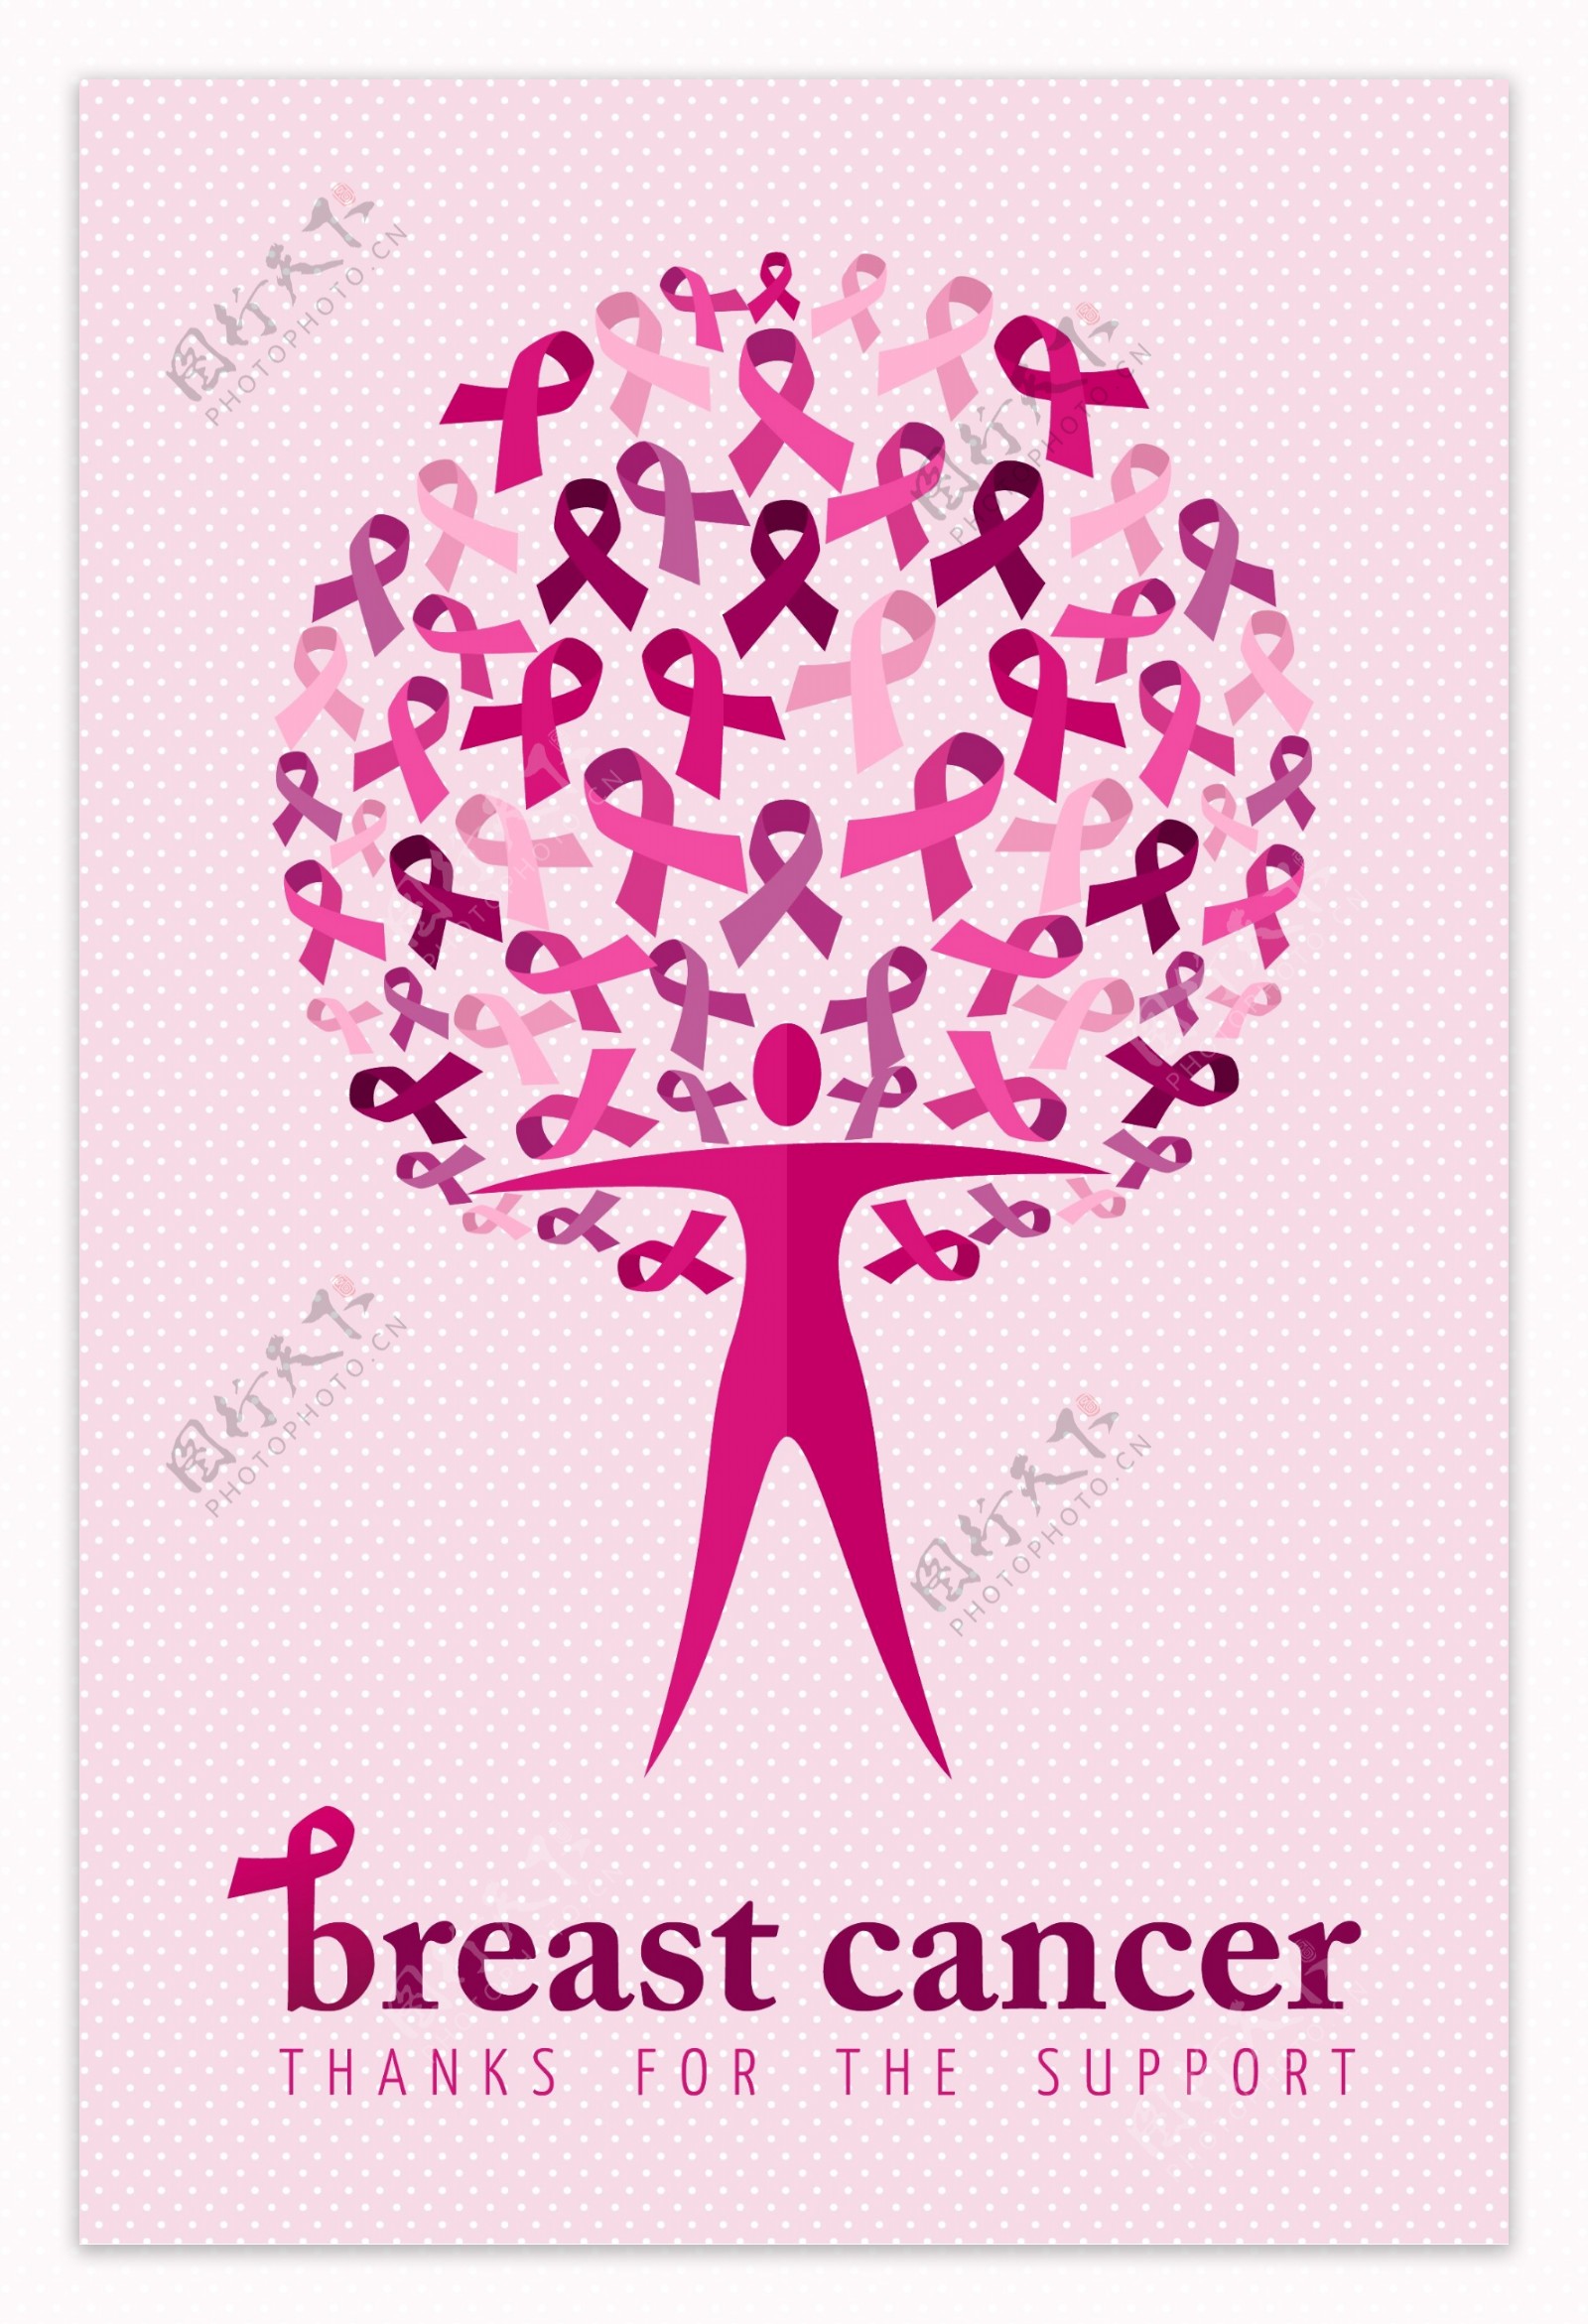 乳腺癌广告